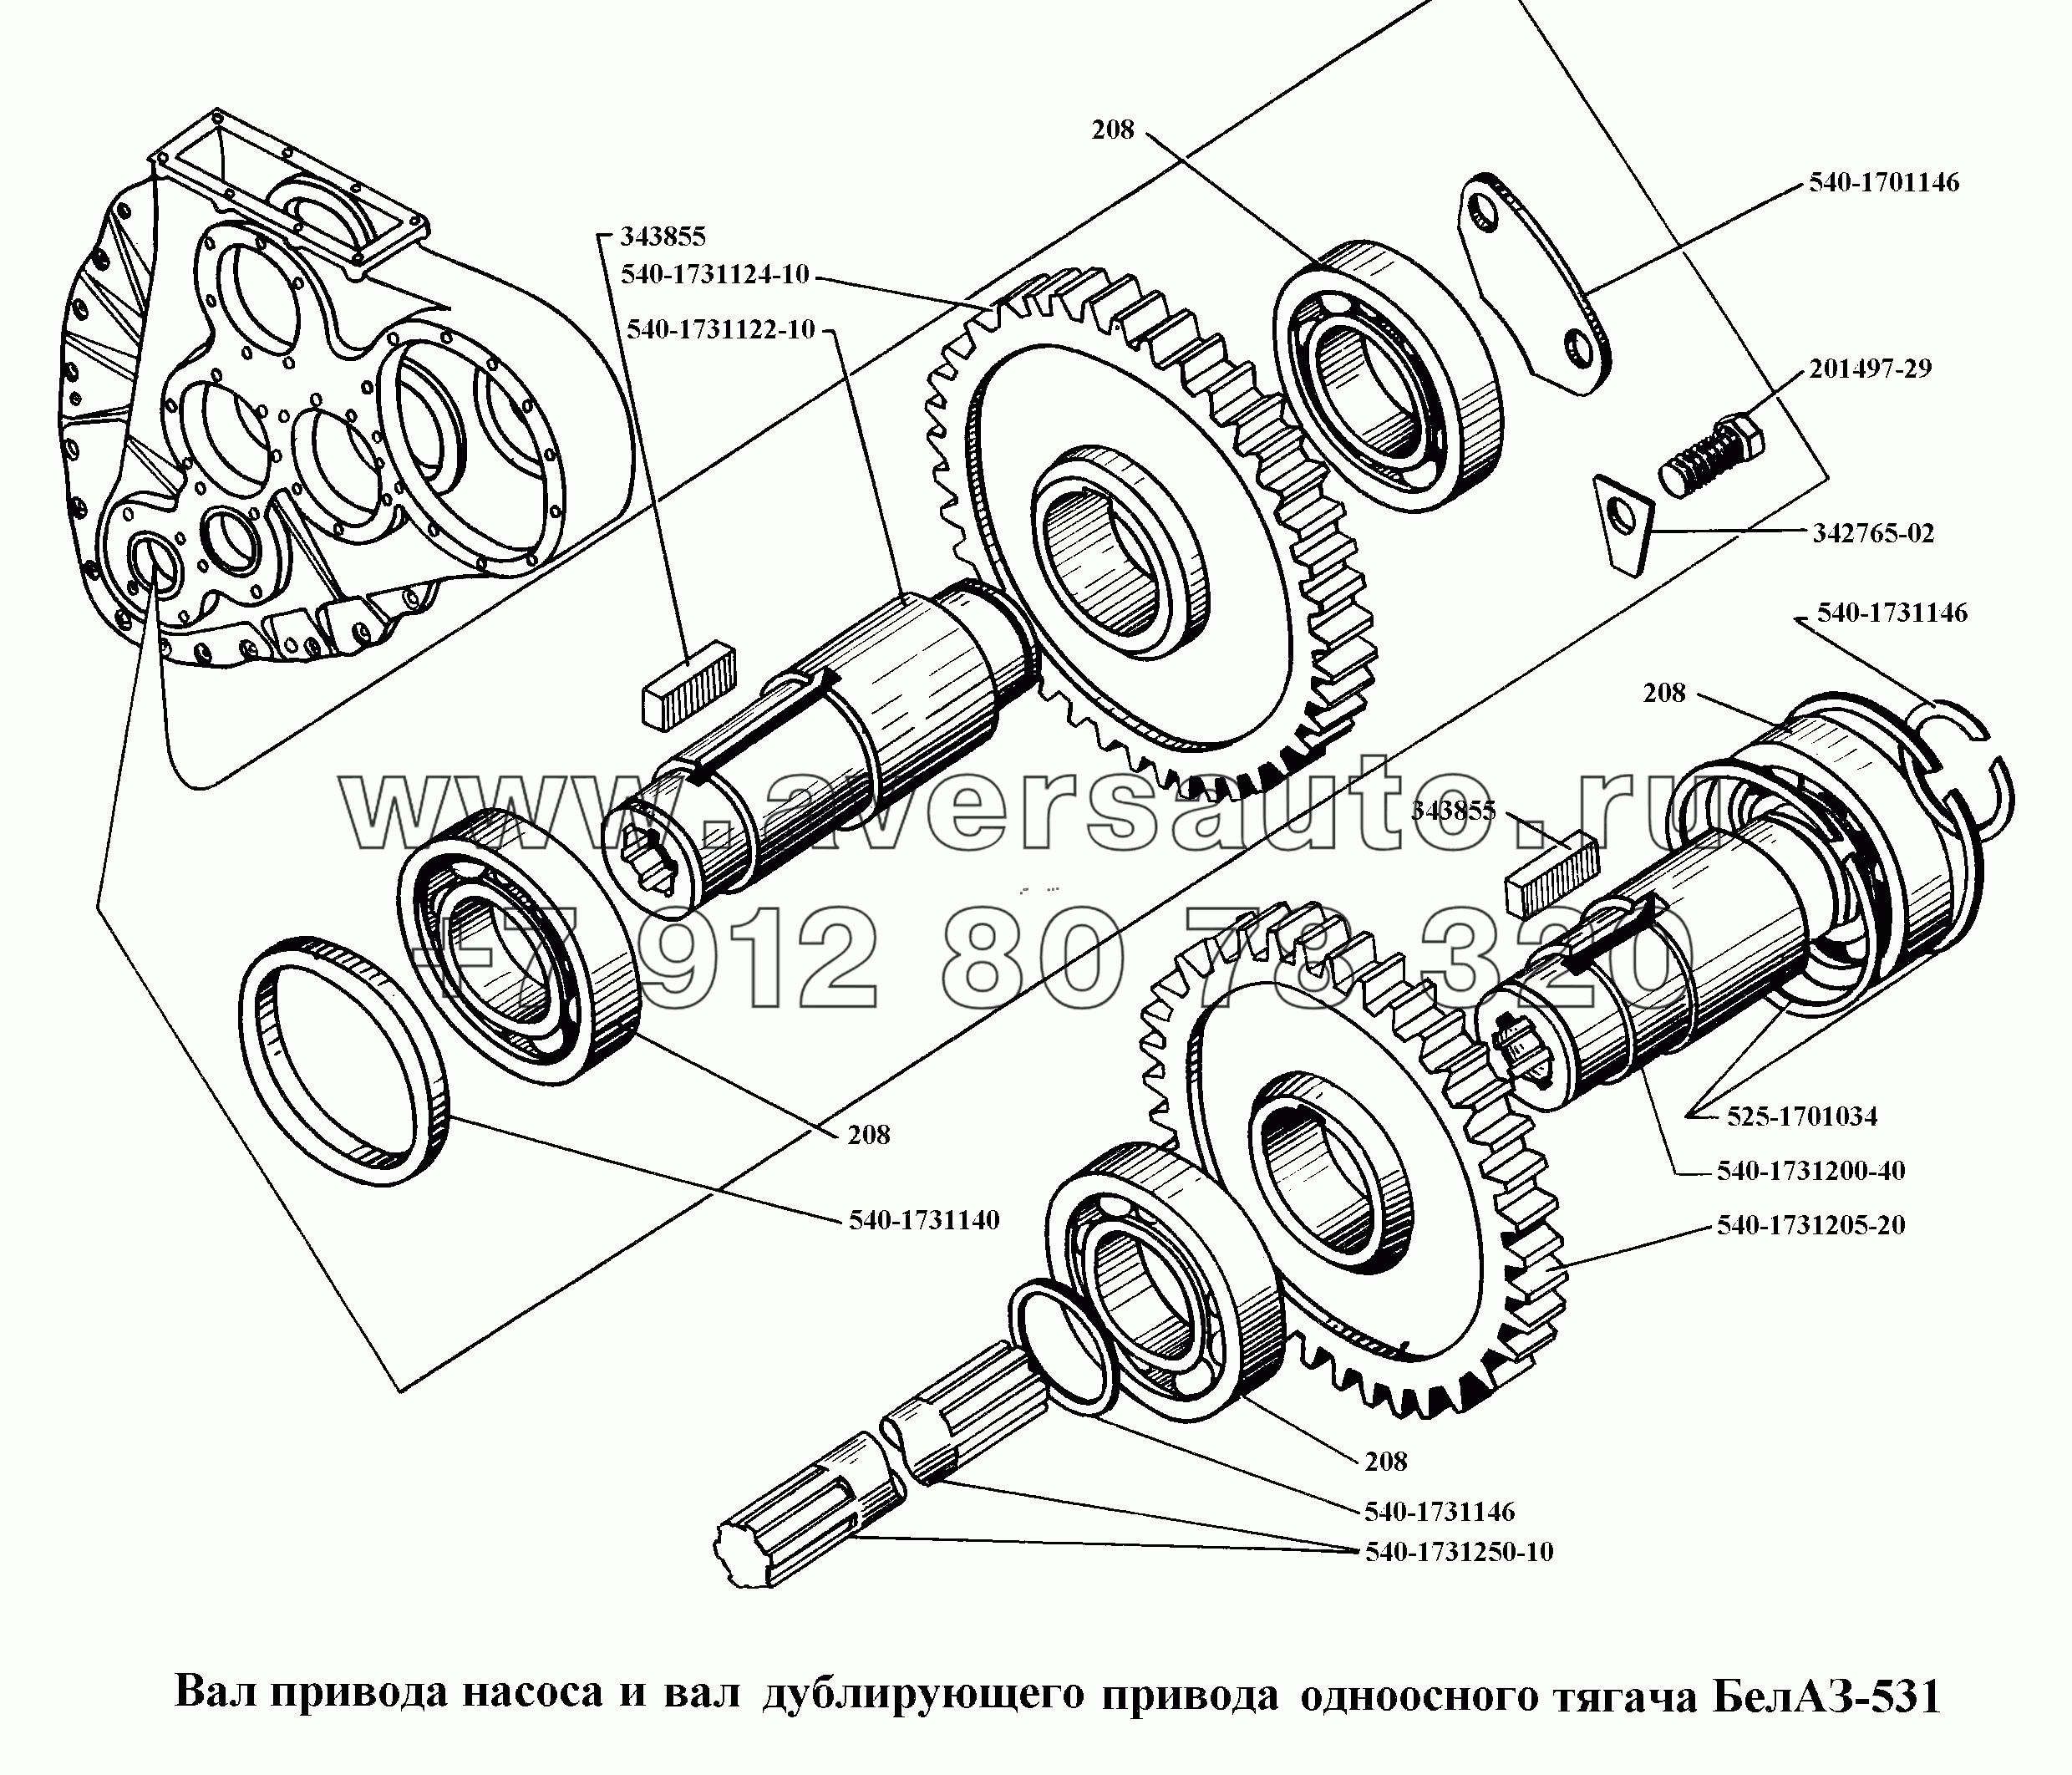 Вал привода насоса и вал дублирующего привода одноосного тягача БелАЗ-531